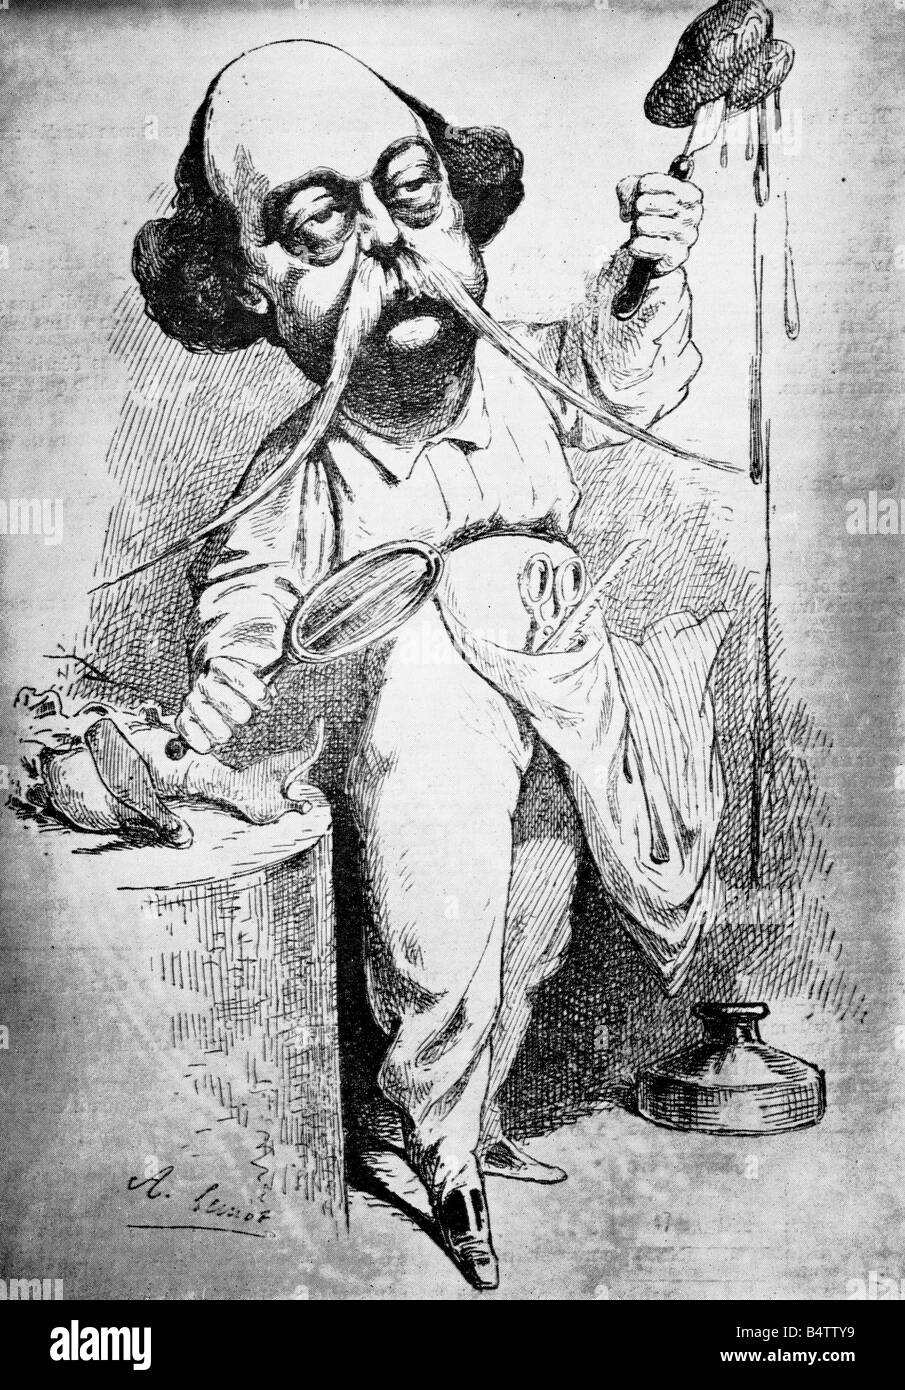 Flaubert, Gustave, 12.12.1821 - 8.5.1880, auteur/écrivain français, pleine longueur, caricature 'Flaubert dissecting Emma Bovary', par Lemot, 1869, Banque D'Images